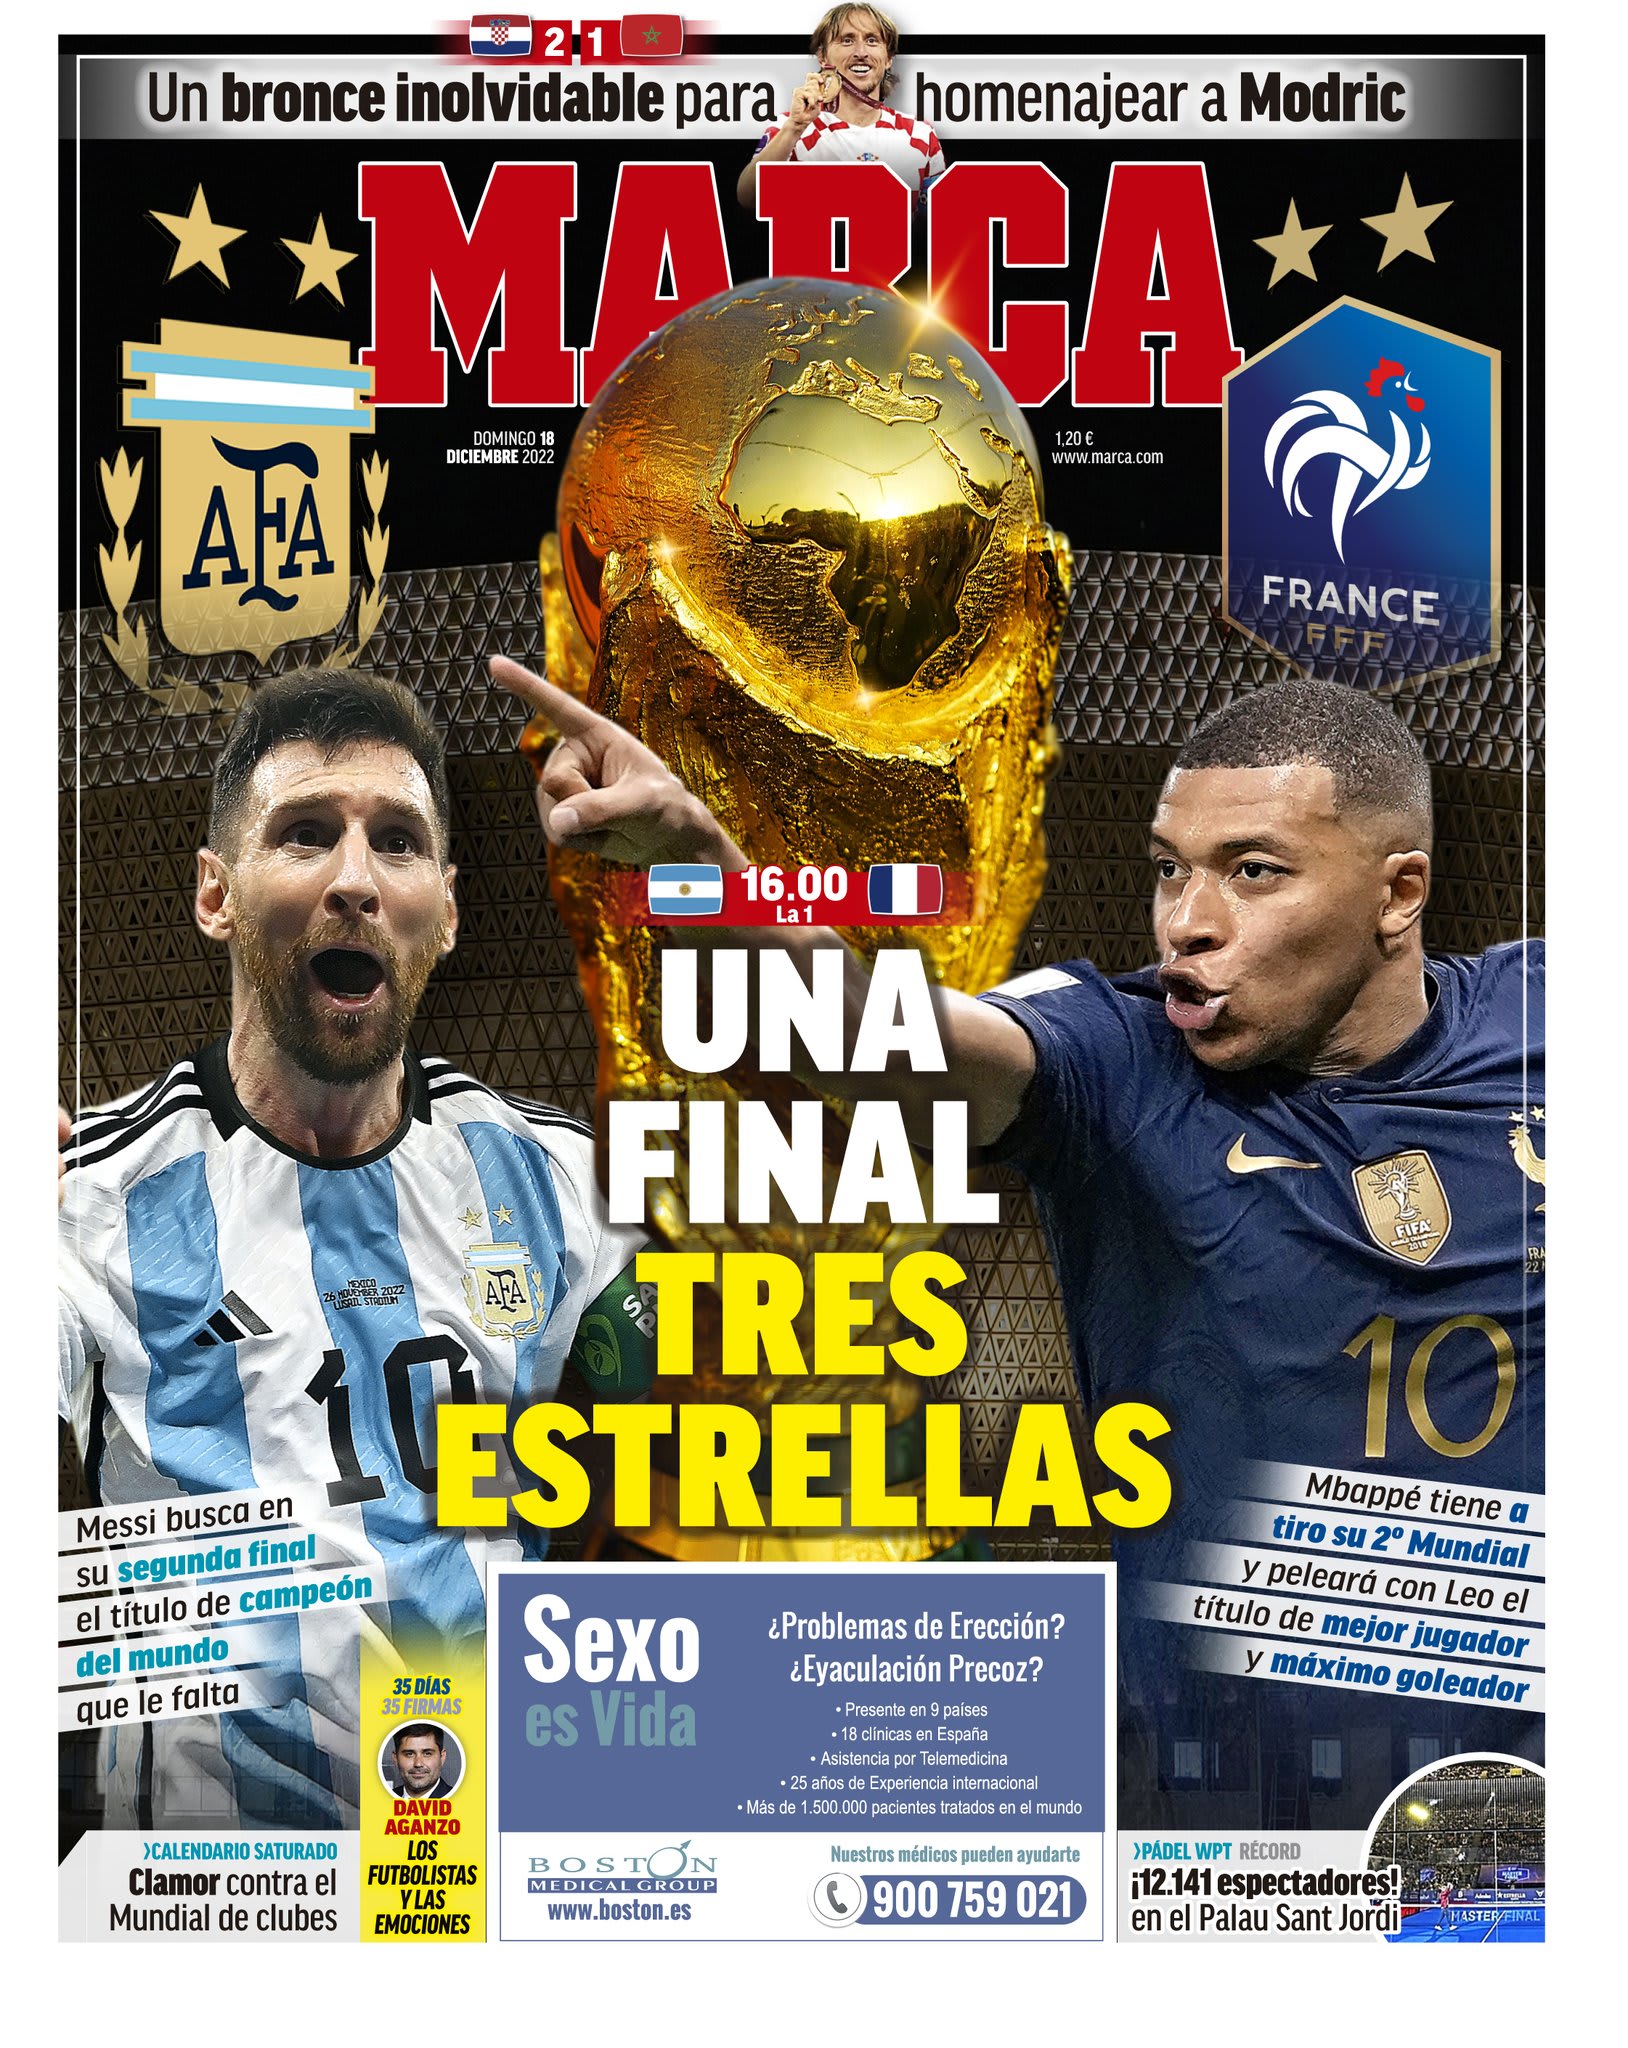 שער "מארקה" לקראת גמר המונדיאל צרפת - ארגנטינה